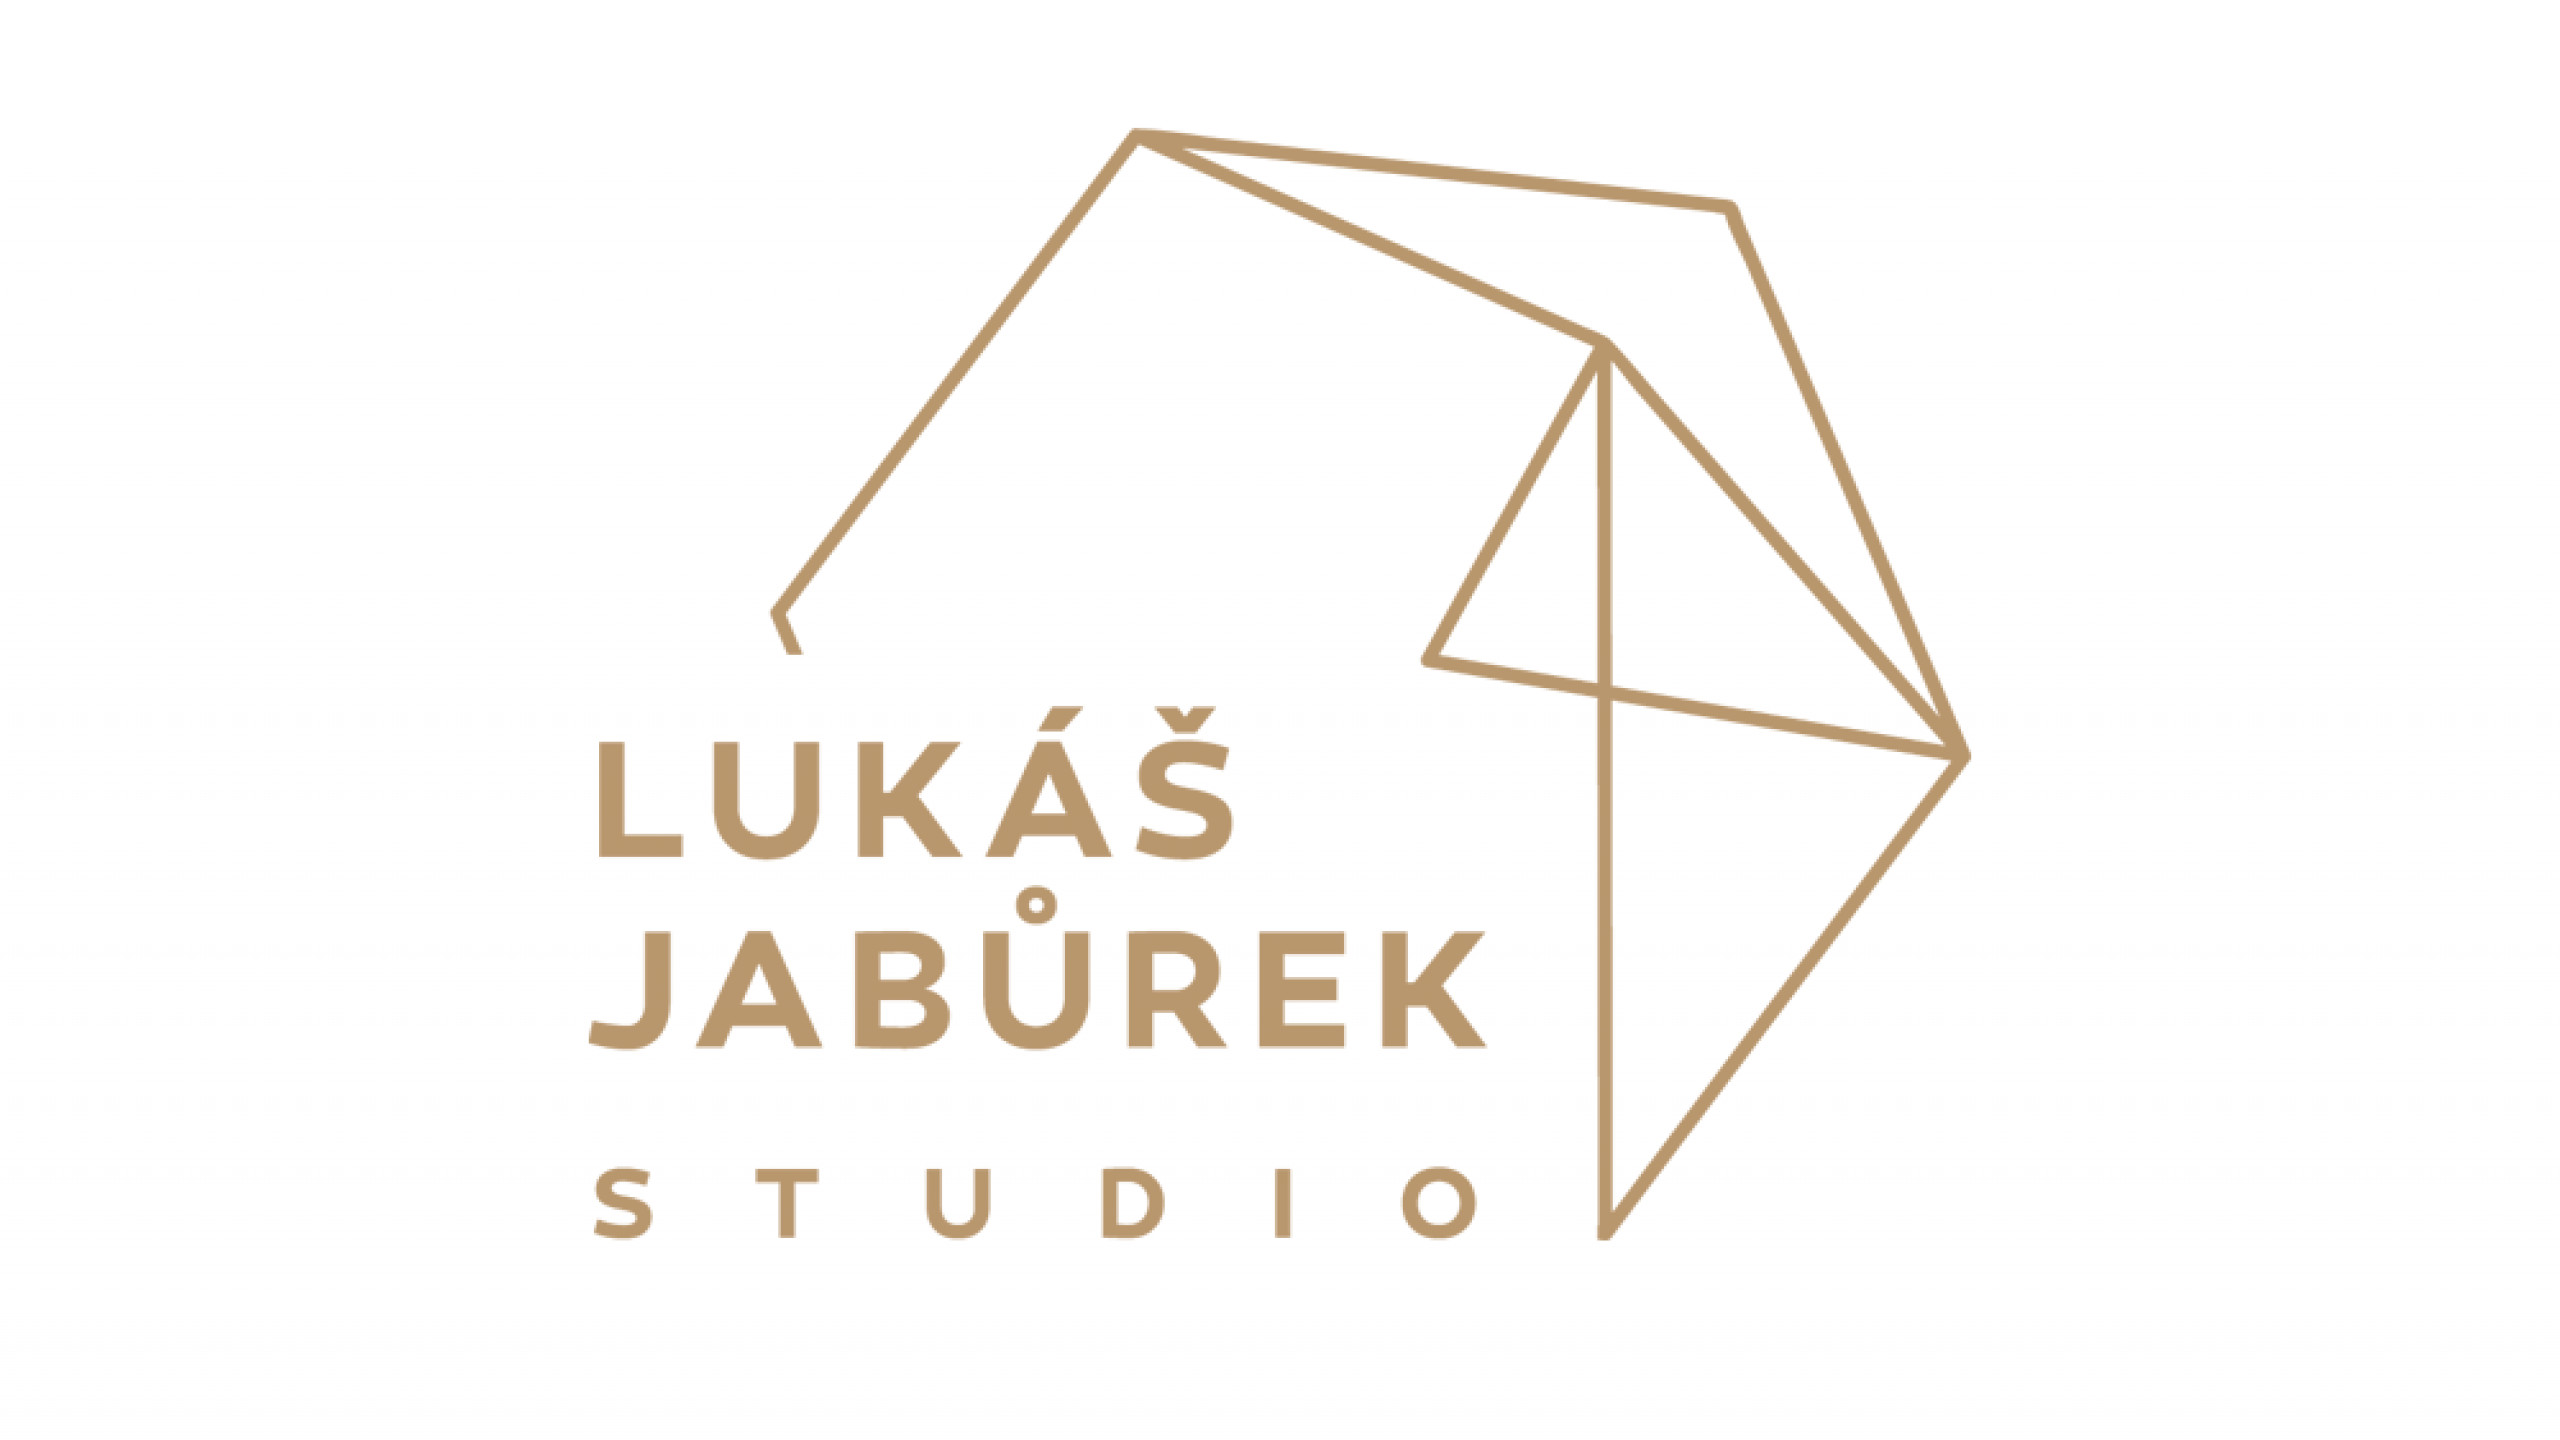 Lukas Jaburek